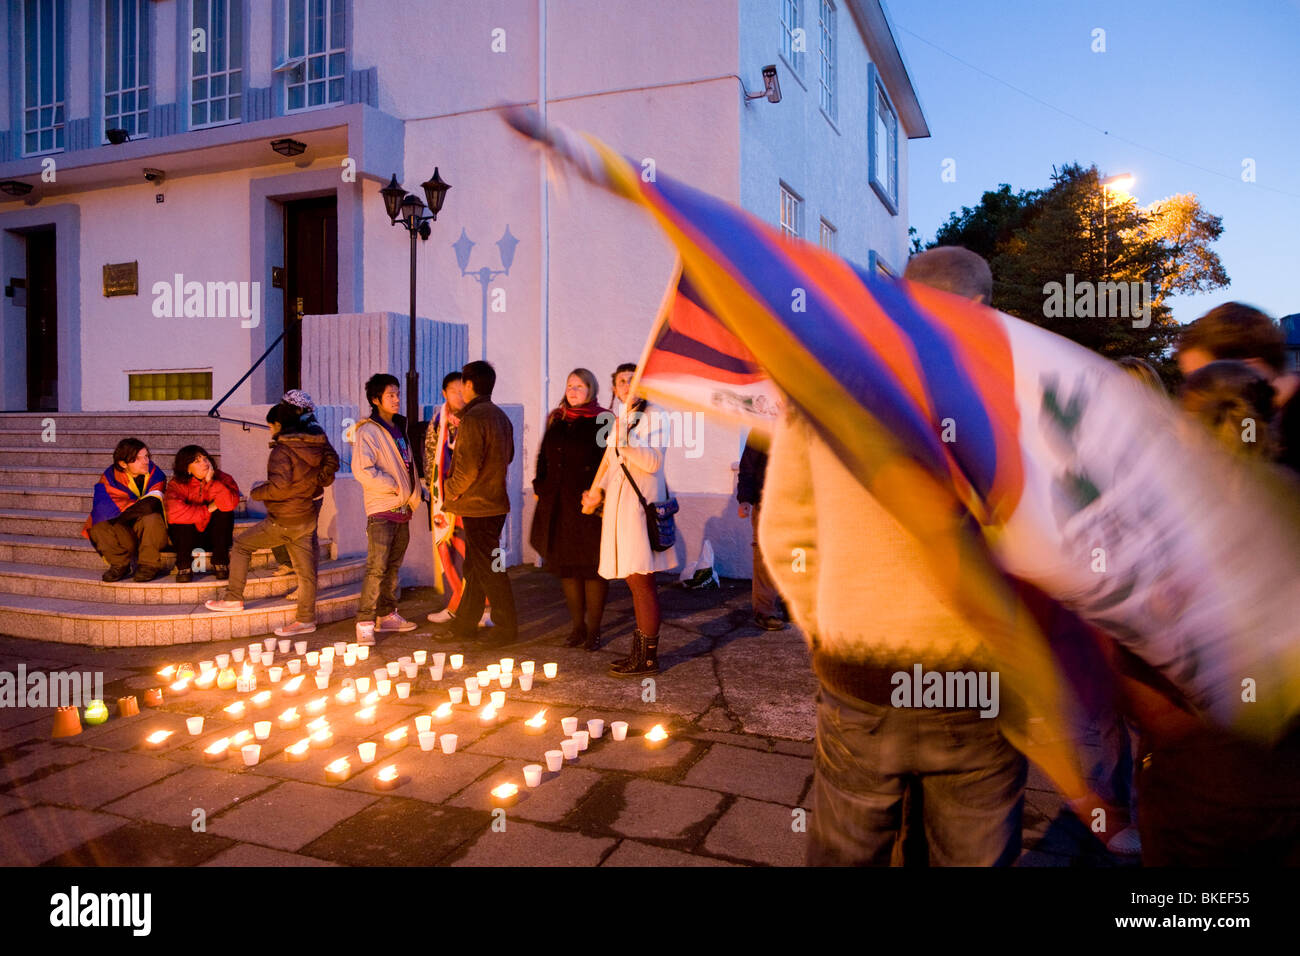 Les tibétains et les Islandais joindre leurs forces et de protestation contre l'occupation chinoise au Tibet. Ambassade de Chine, Reykjavik, Islande. Banque D'Images